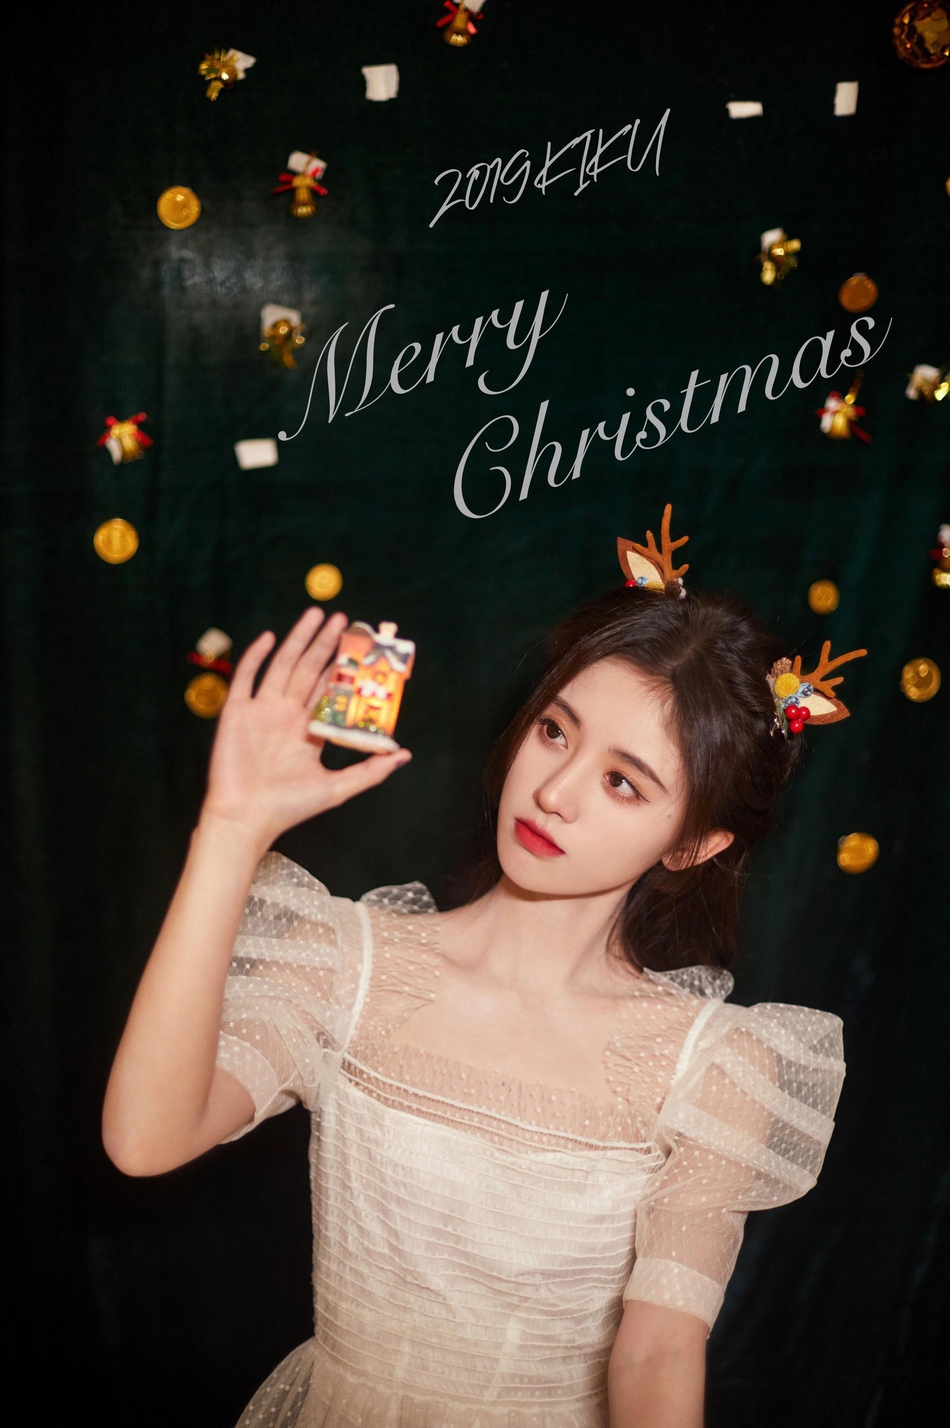 12月24日,鞠婧祎工作室晒出一组圣诞写真,照片中鞠婧祎身穿白色蕾丝纱